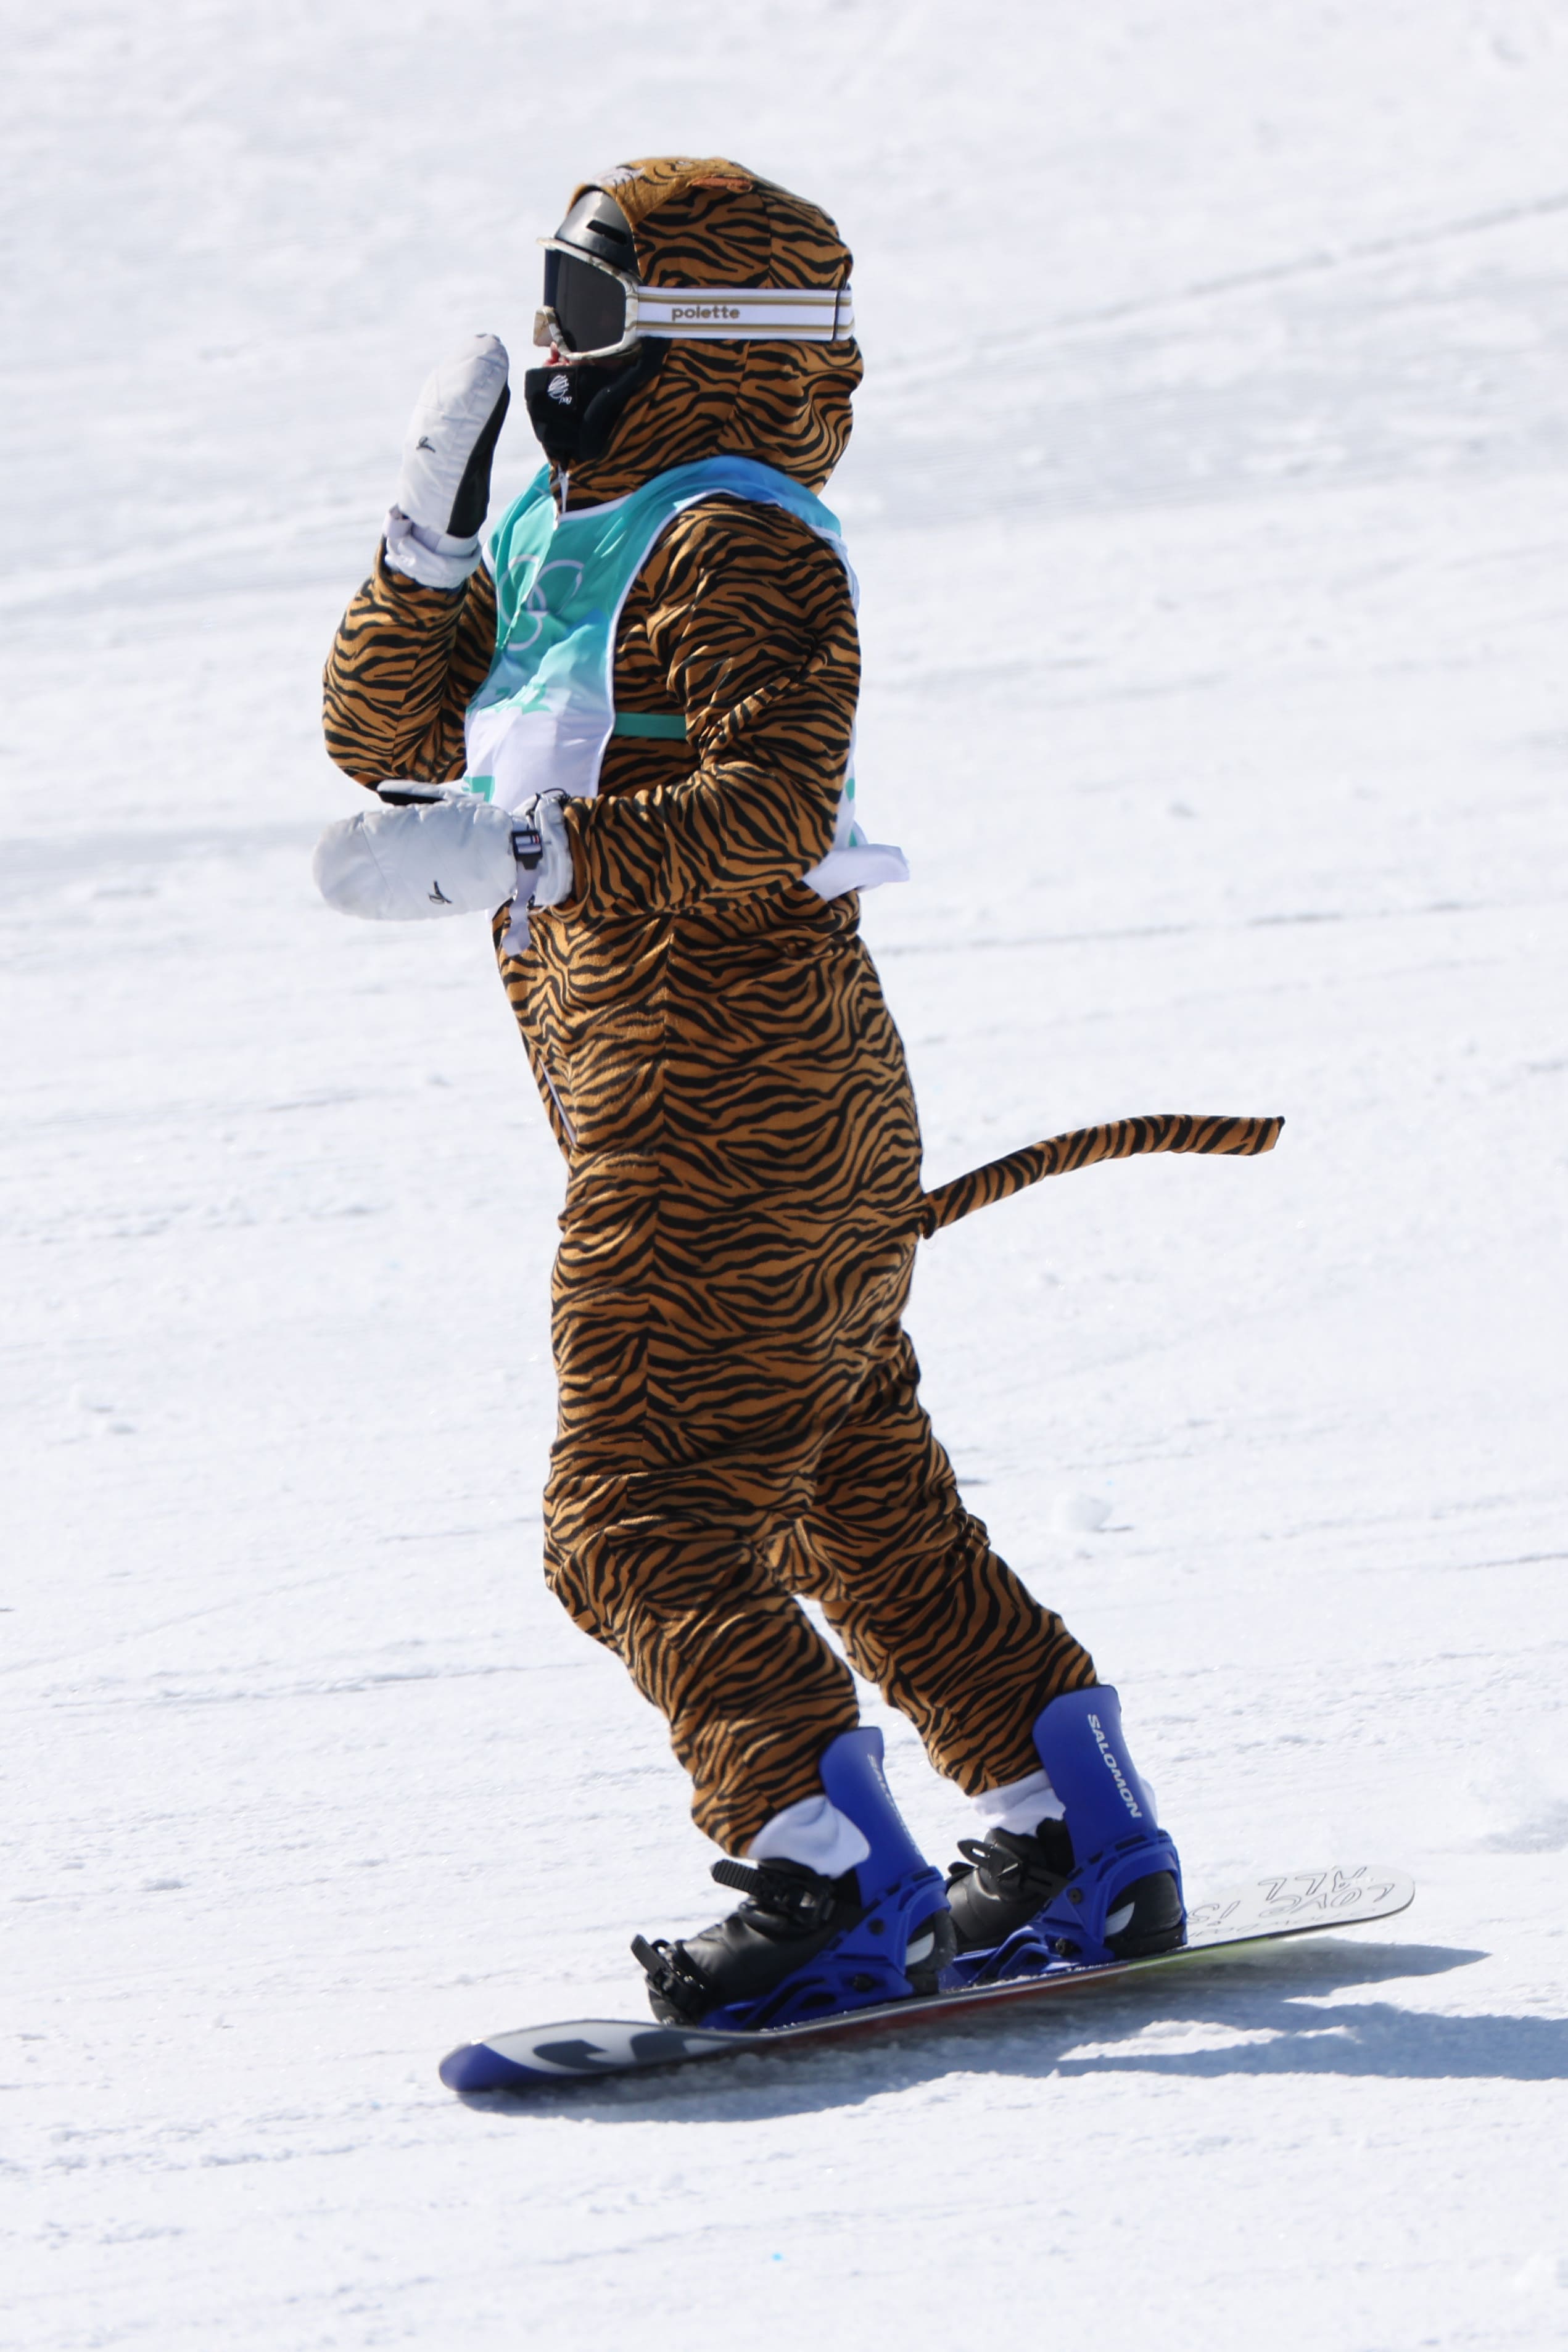 Lucile Lefevre Pékin 2022 Snowboard Big Air France Olympique Tigre